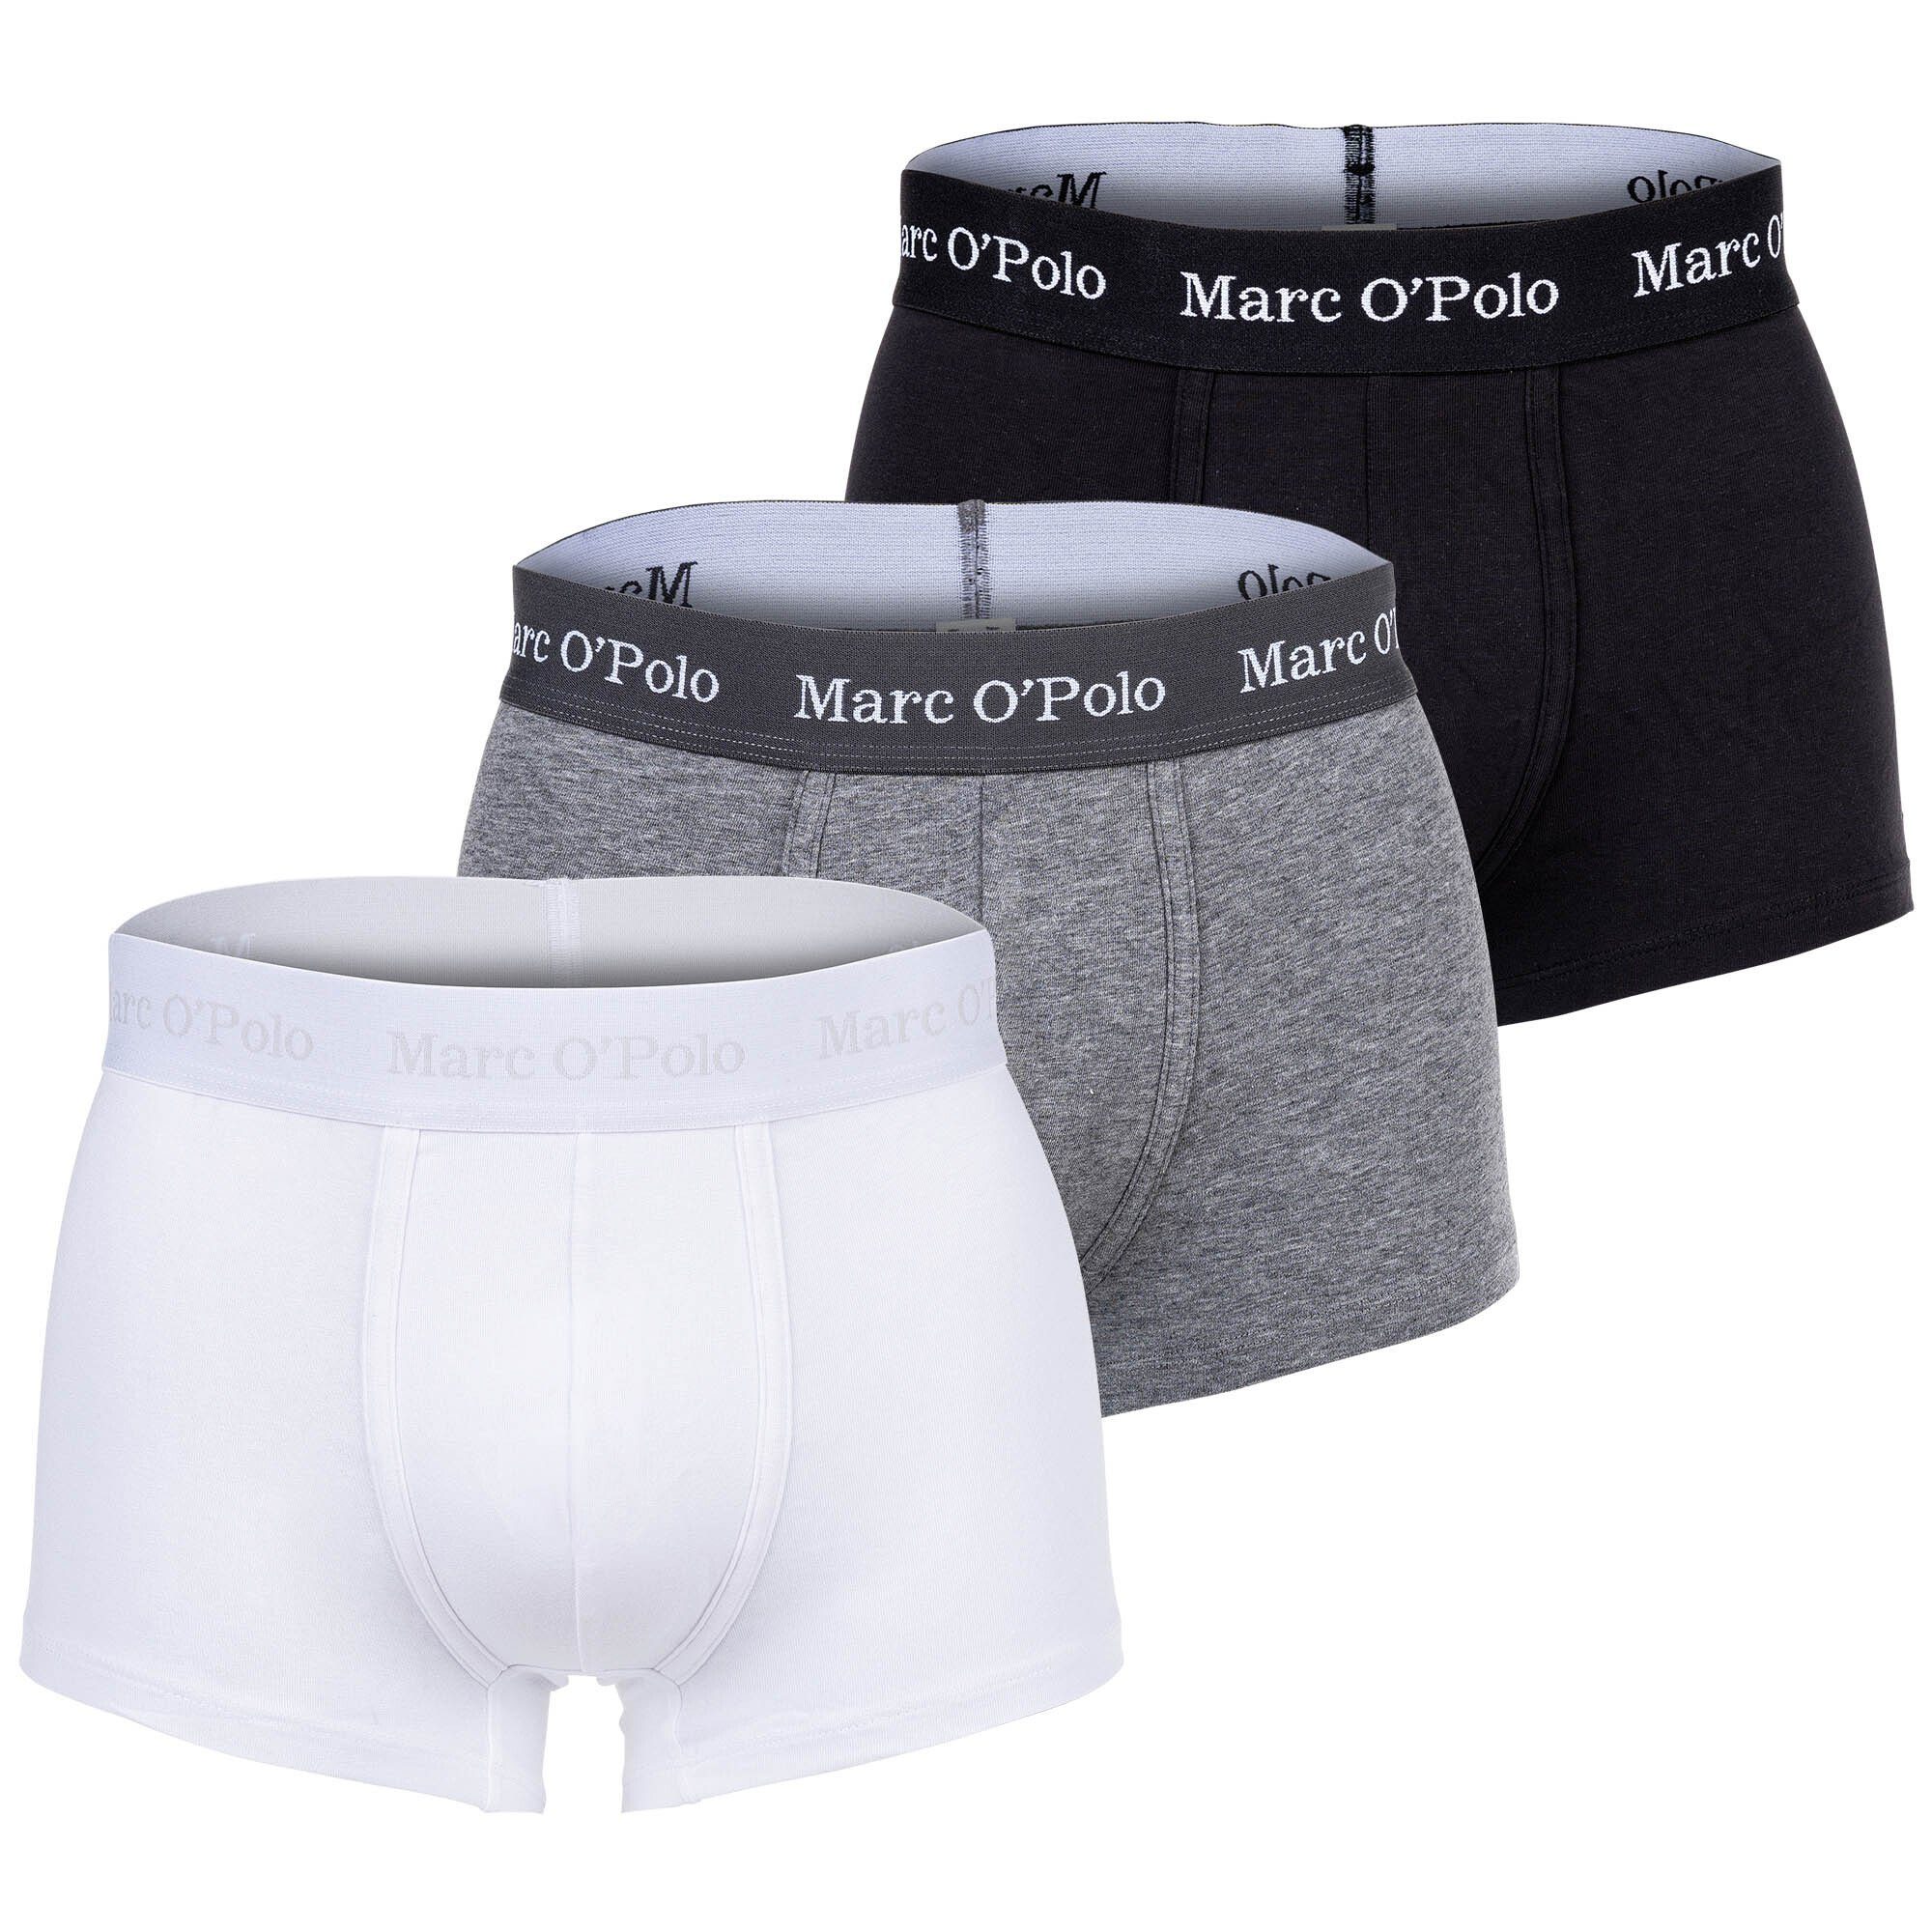 Jetzt supergünstig per Versand bestellen Marc O'Polo Boxer Herren Boxer 3er Pack Trunks, Shorts, Organic 